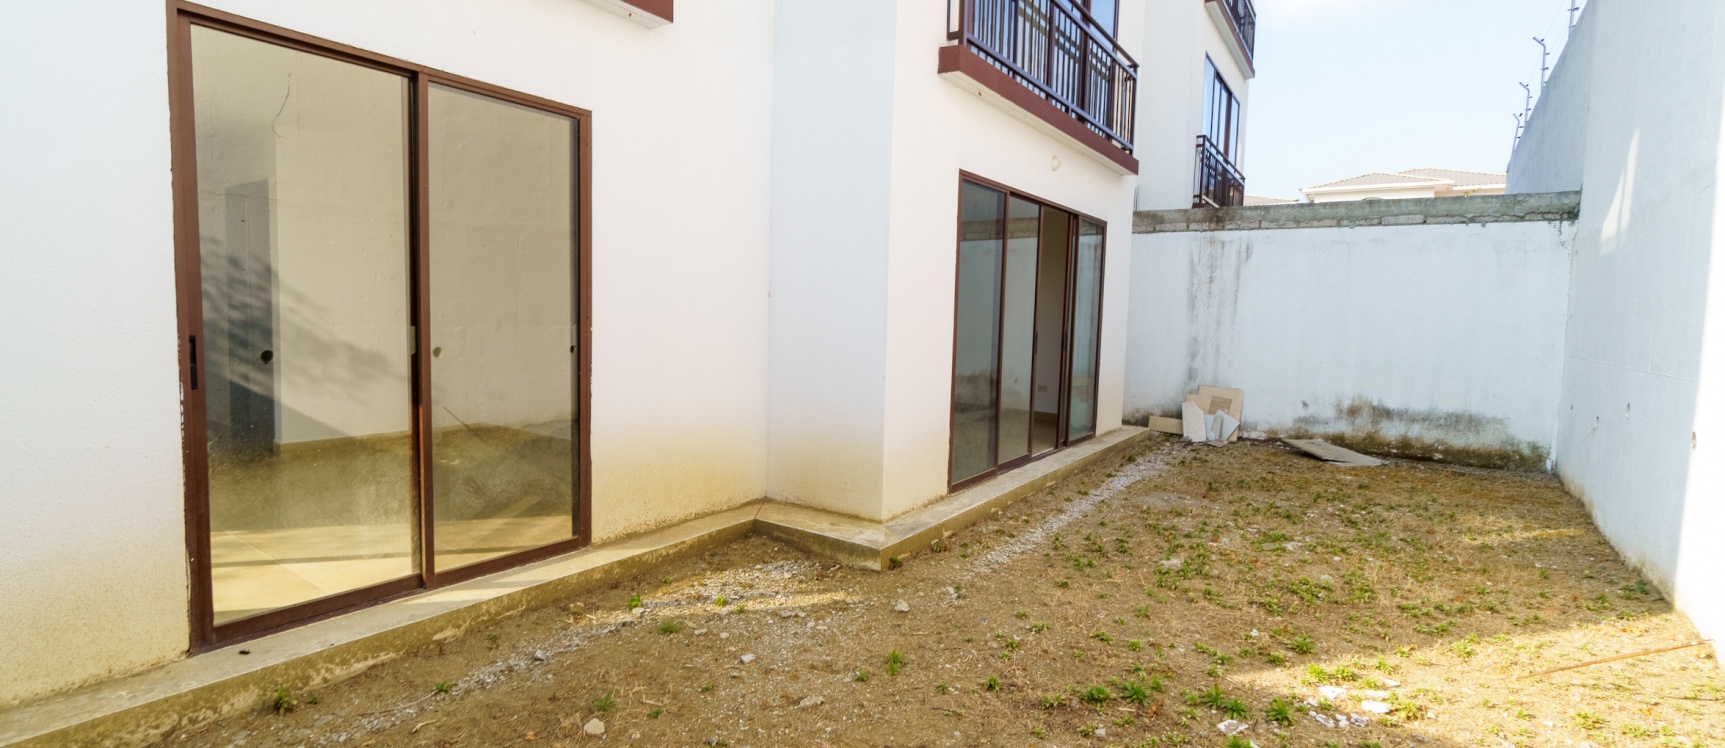 GeoBienes - Departamento planta baja con patio en venta, Urbanización Villas del Bosque - Plusvalia Guayaquil Casas de venta y alquiler Inmobiliaria Ecuador